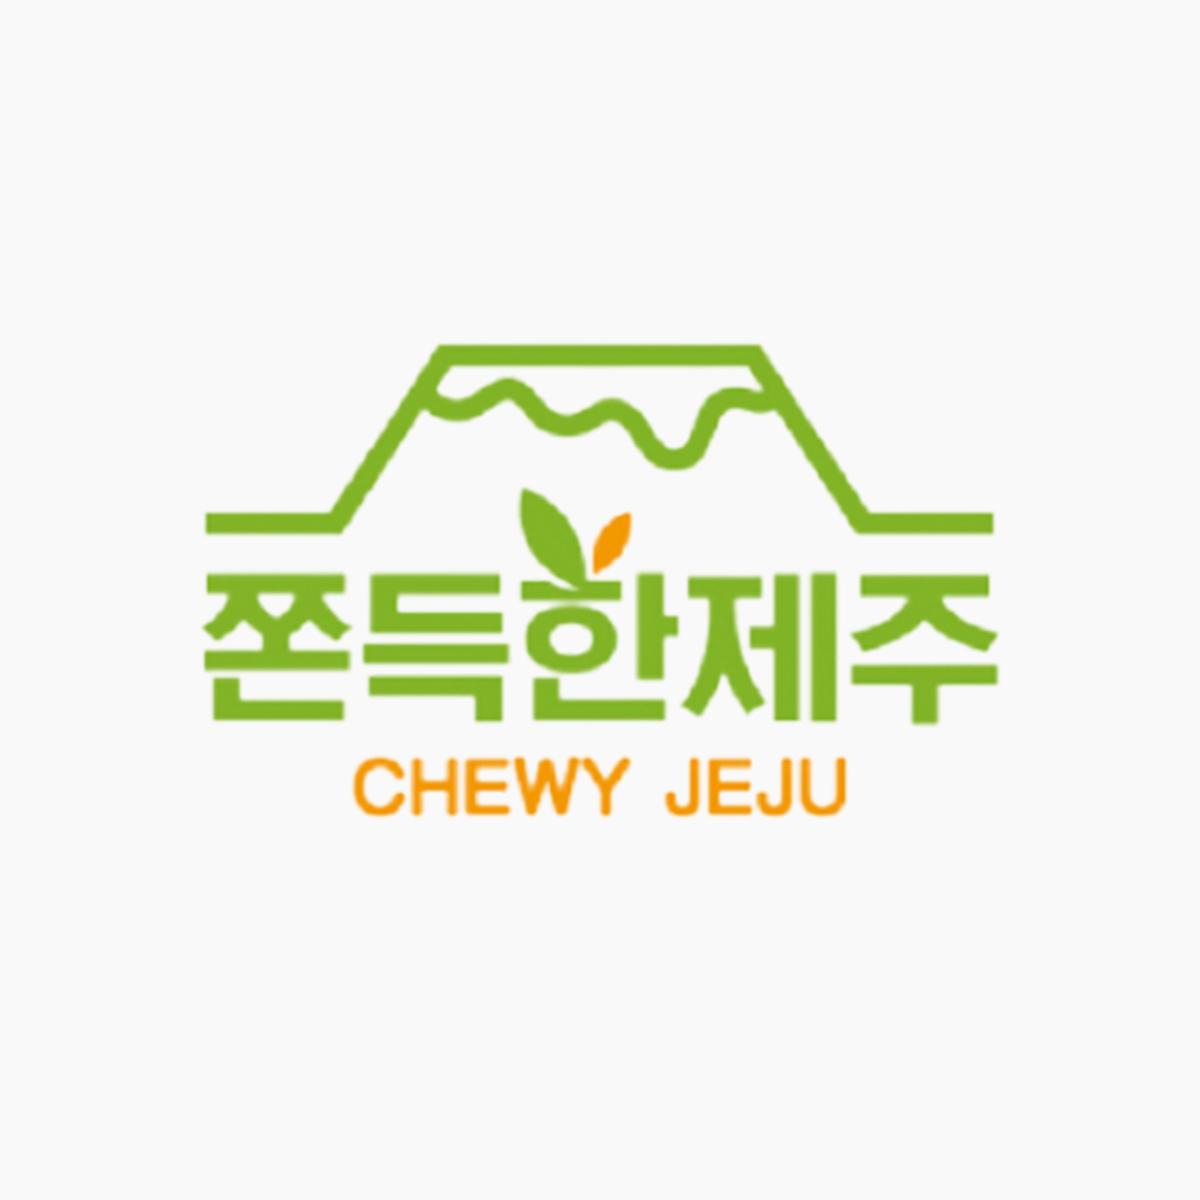 Chewy Jeju